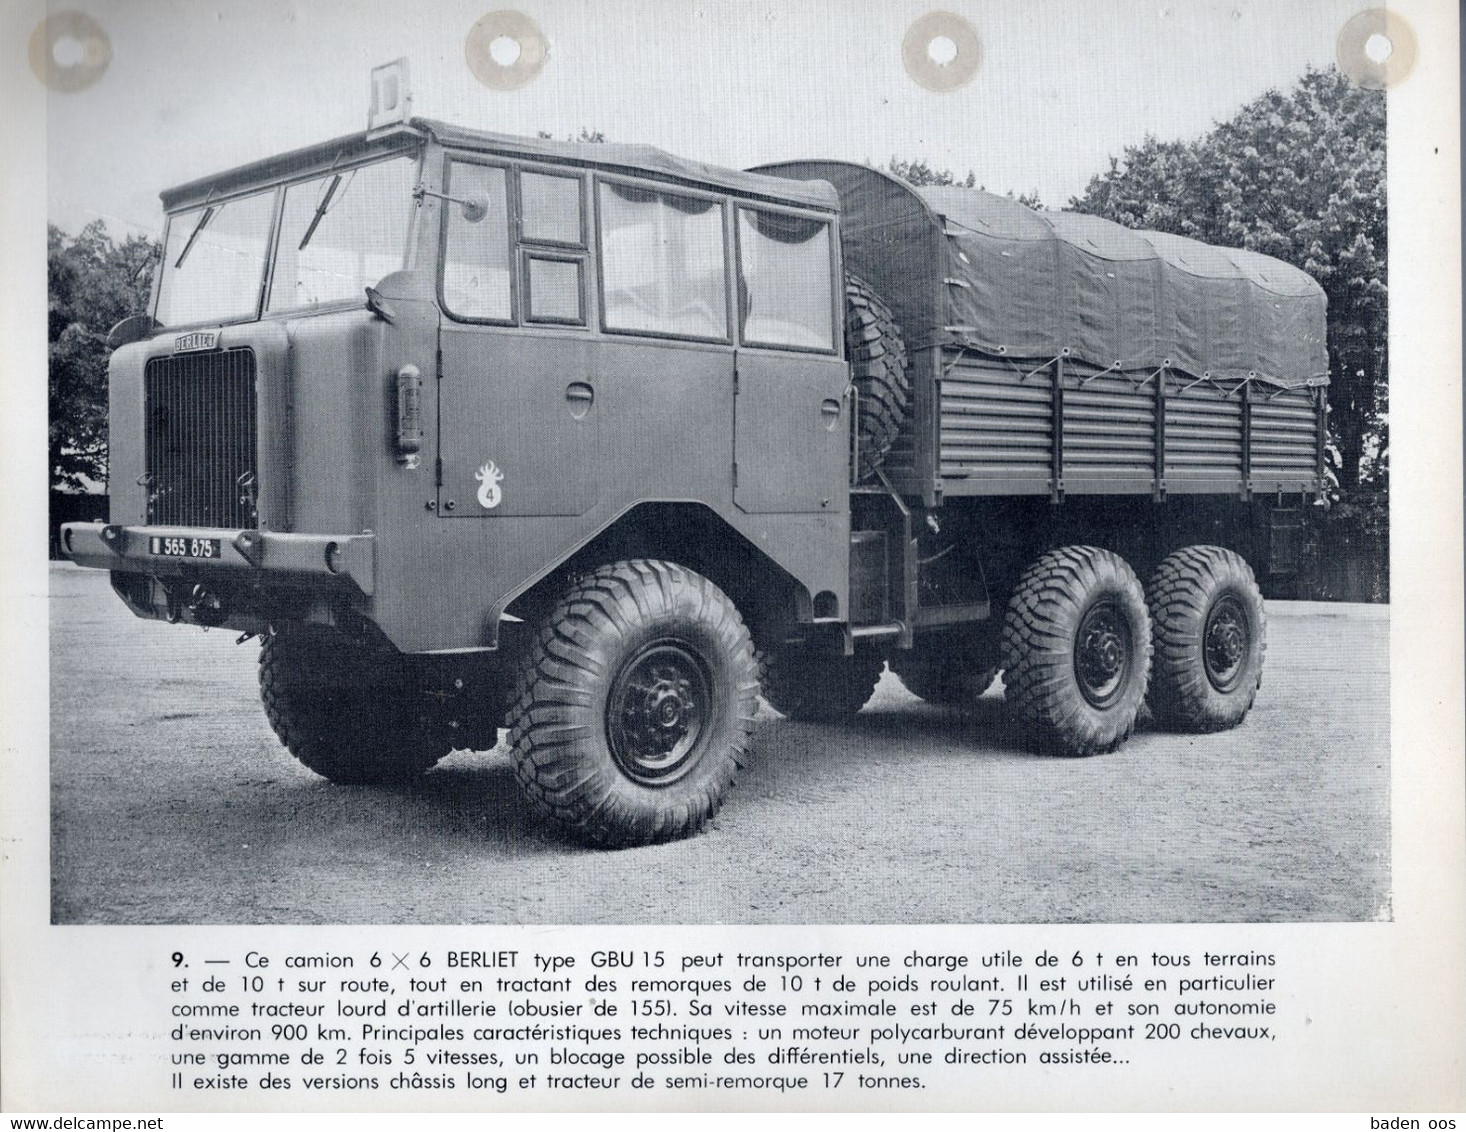 Berliet GBU 15 - Vehicles